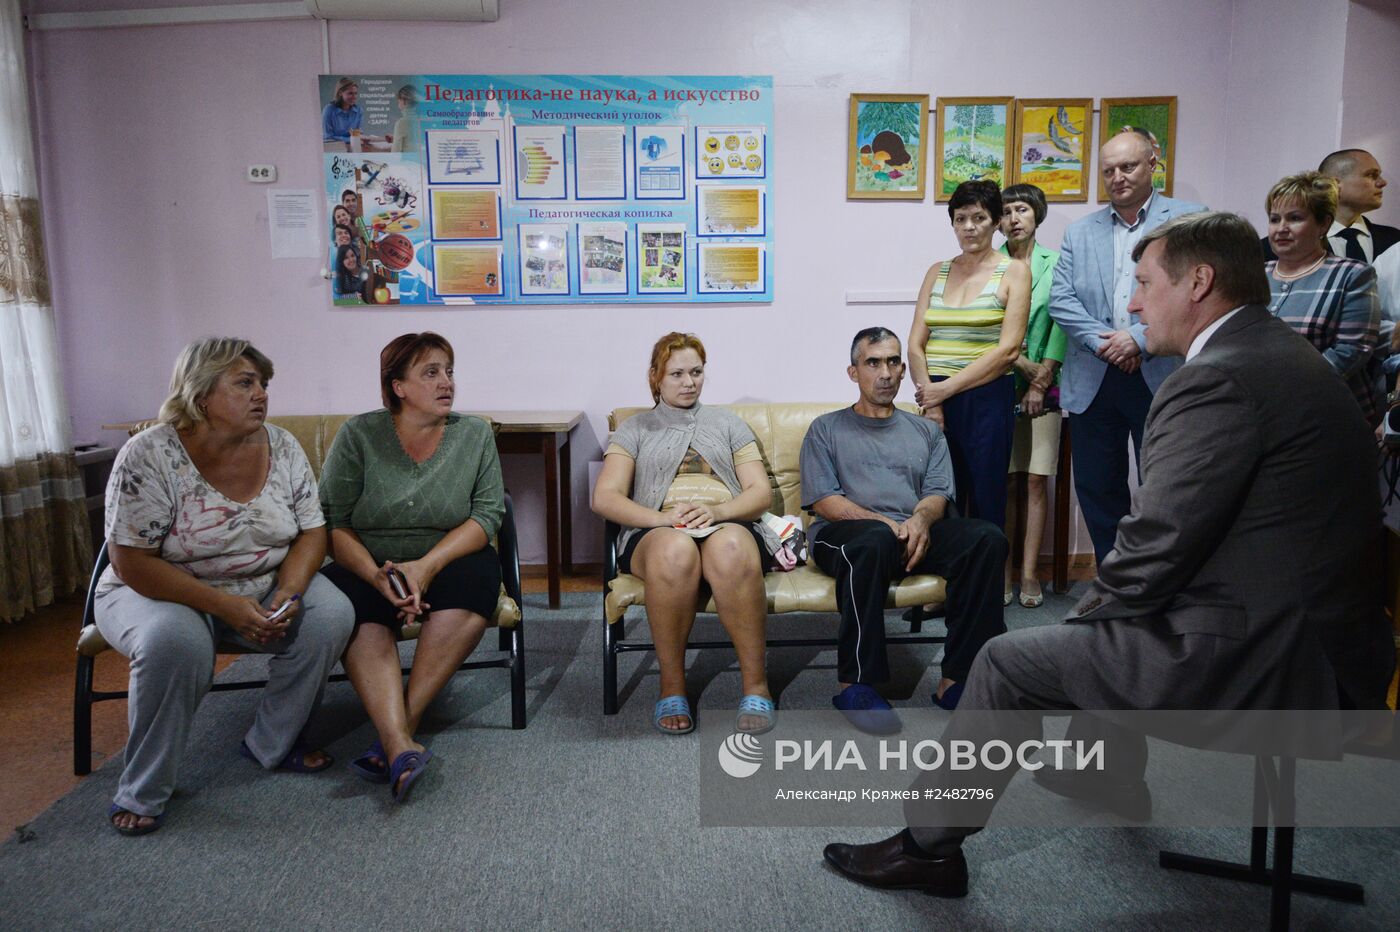 Пункт размещения украинских беженцев в Новосибирске